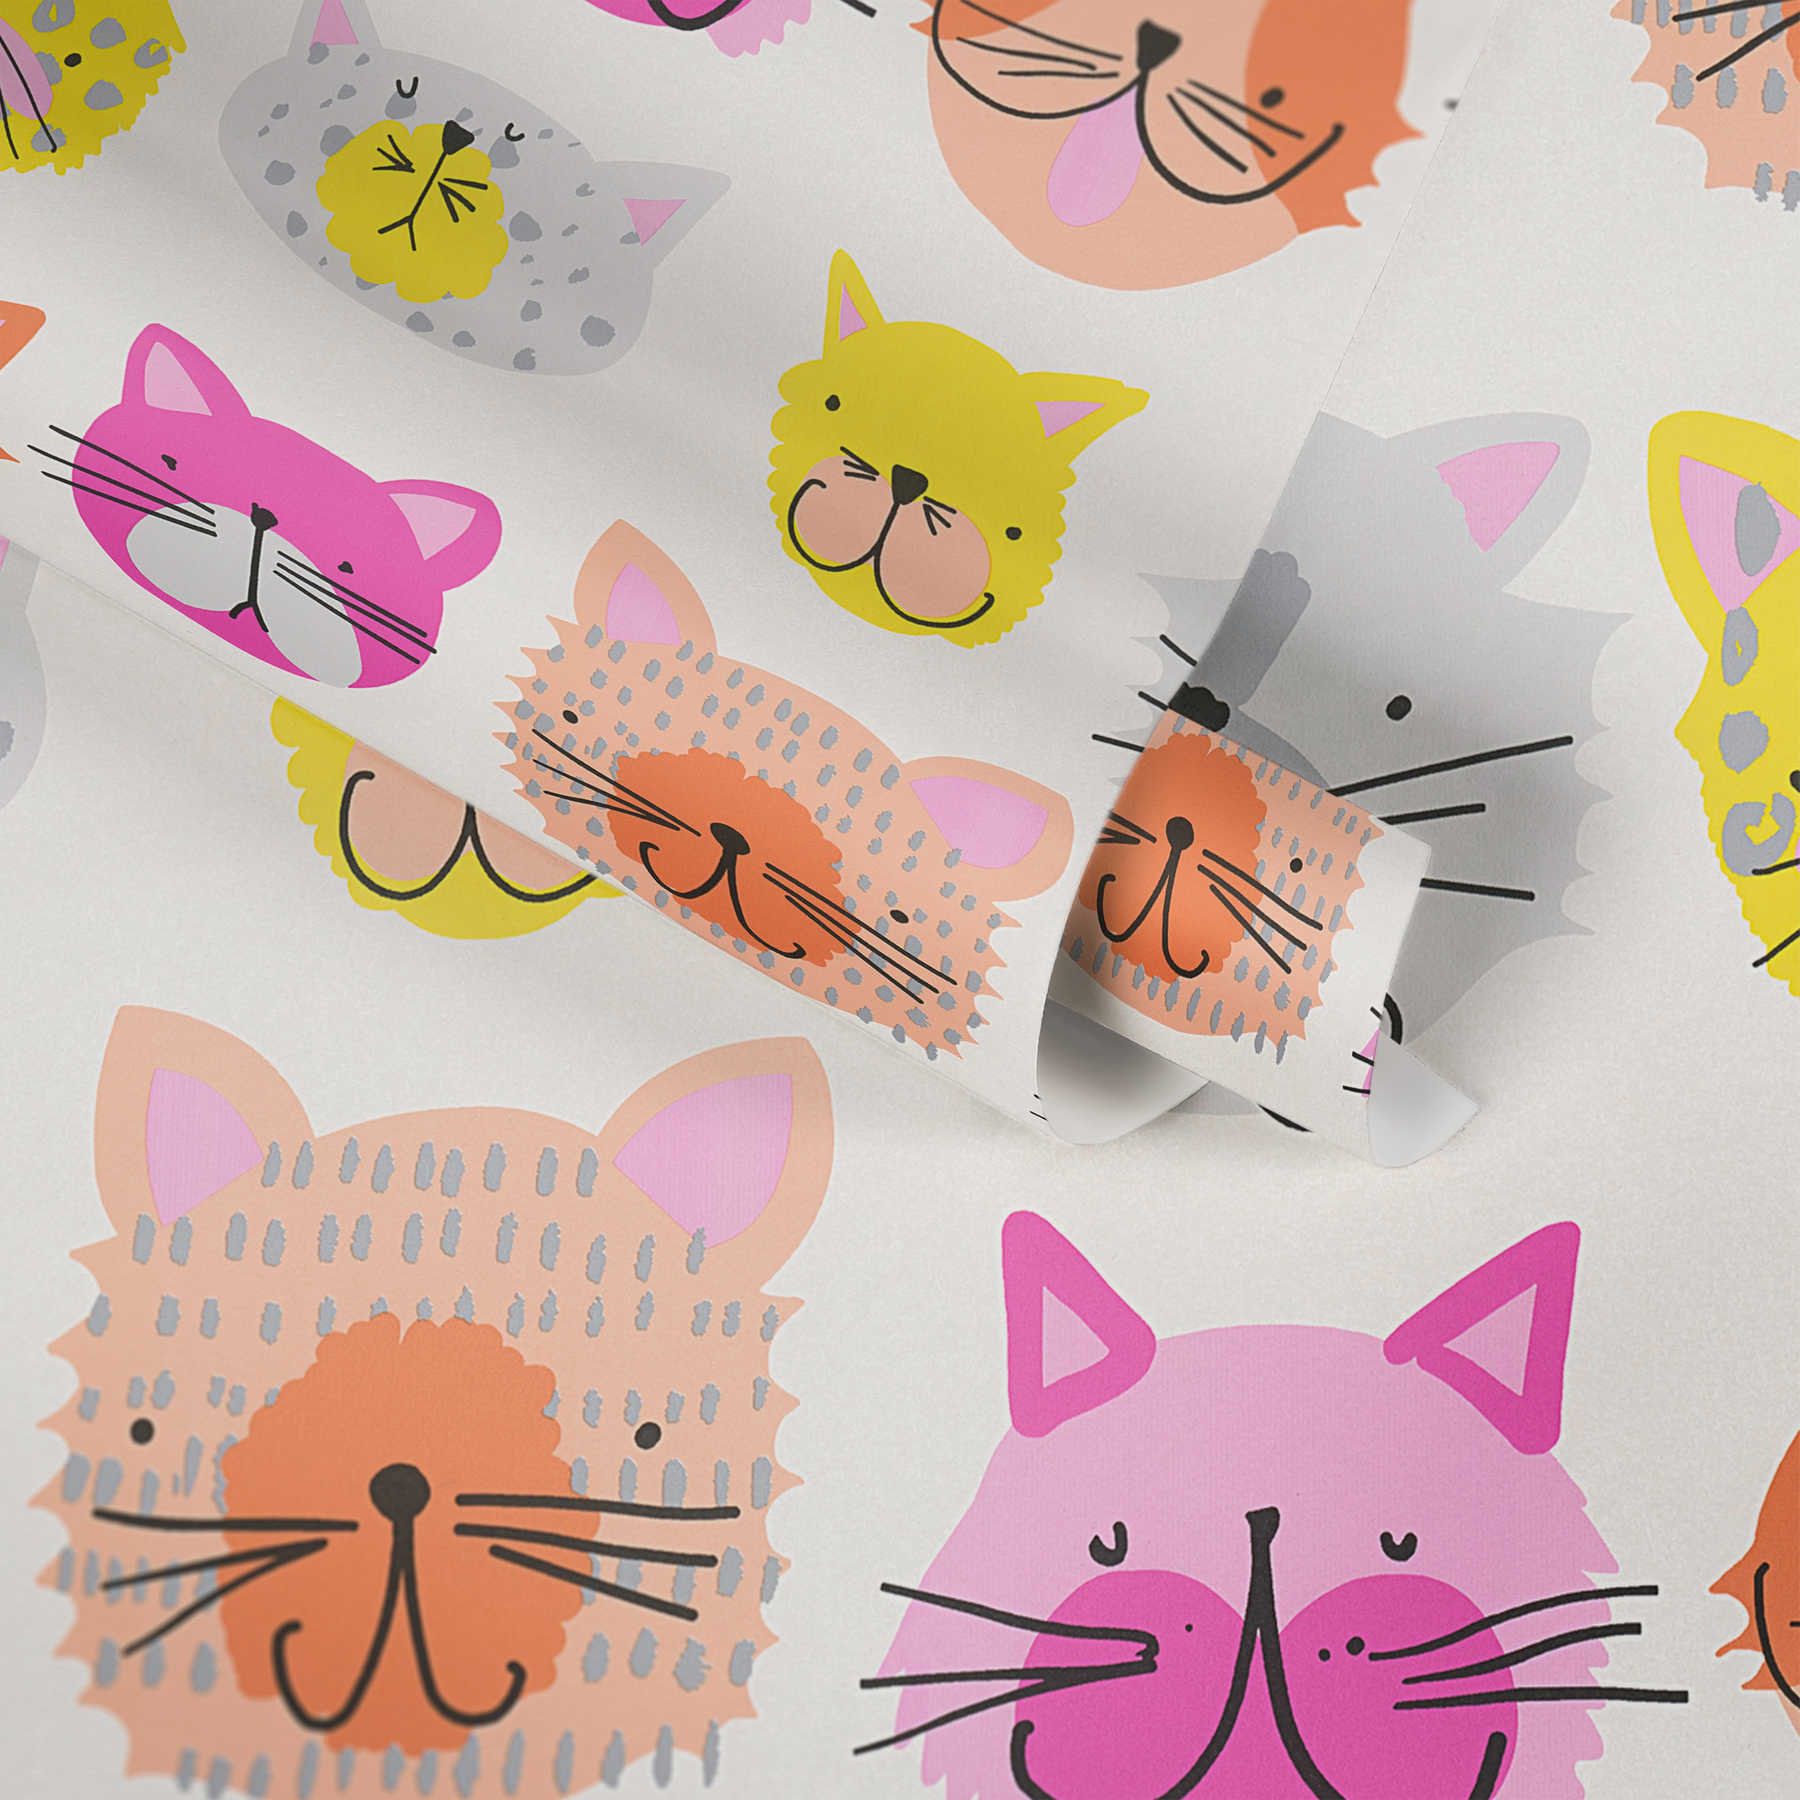             Carta da parati colorata con gatti in stile fumetto per la stanza dei bambini - Rosa, Giallo
        